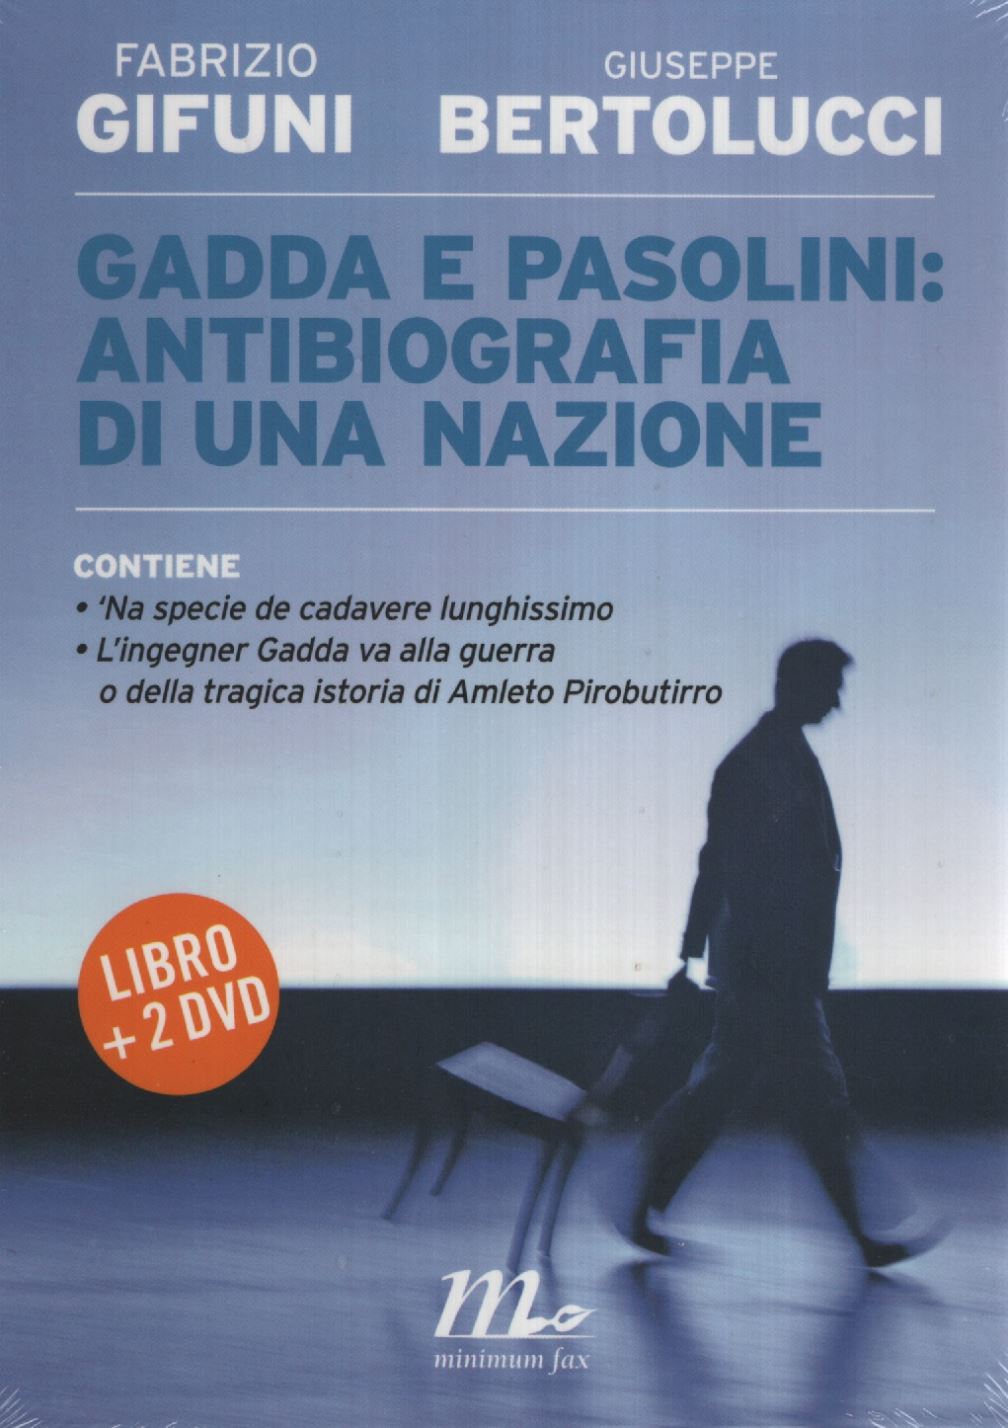 Libri Fabrizio Gifuni Giuseppe Bertolucci - Gadda E Pasolini: Antibiografia Di Una Nazione. Con 2 DVD NUOVO SIGILLATO EDIZIONE DEL SUBITO DISPONIBILE